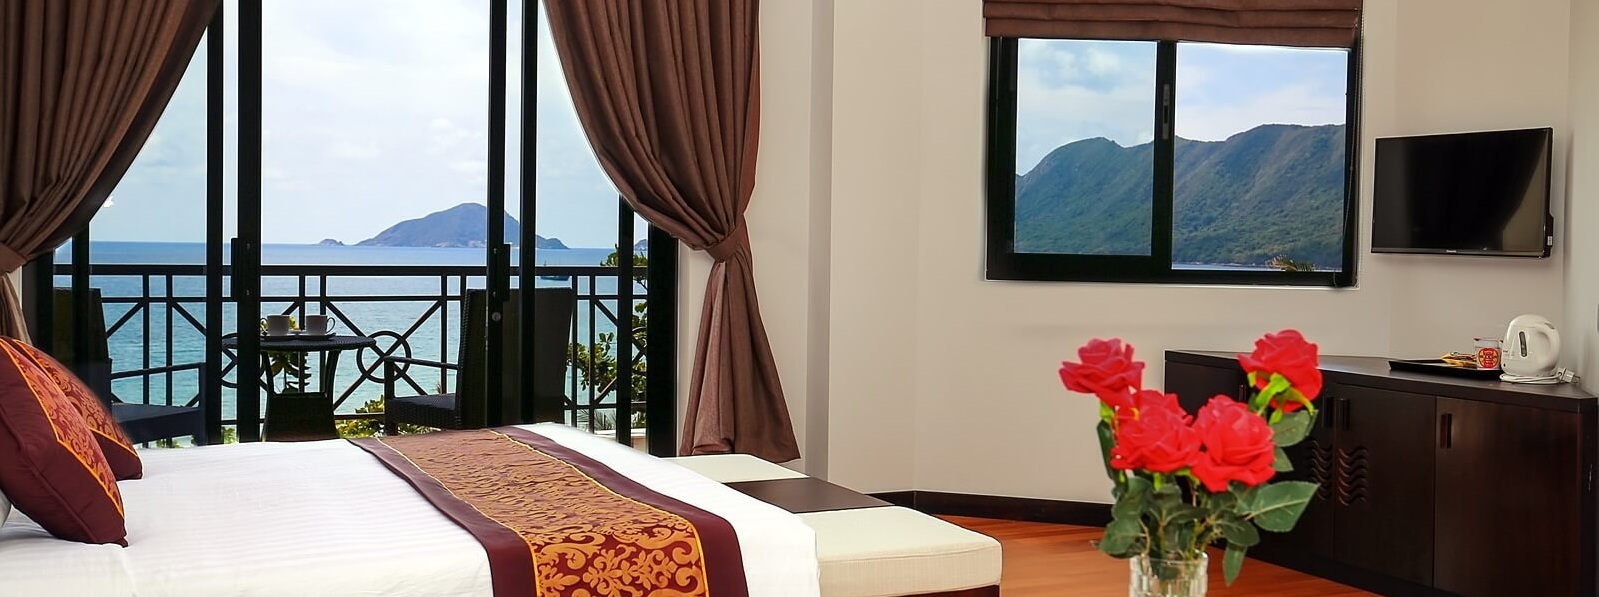 phòng ngủ resort Côn Đảo - khách sạn ở côn đảo gần biển 